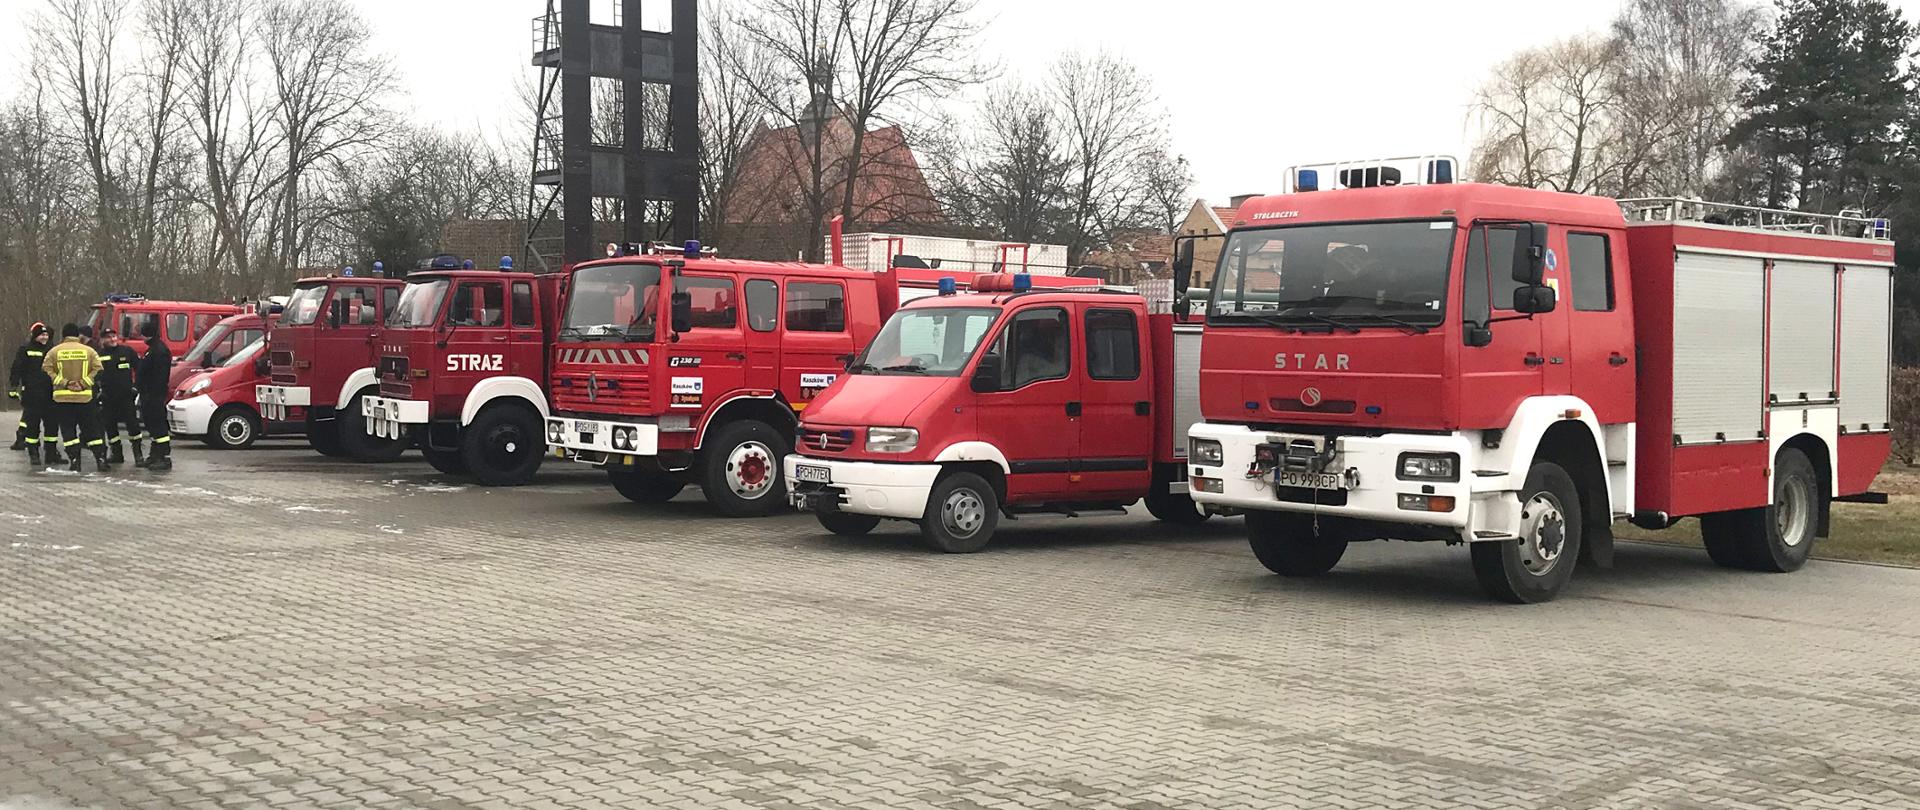 Na zdjęciu 9 samochodów strażackich przekazywanych ukraińskim strażakom